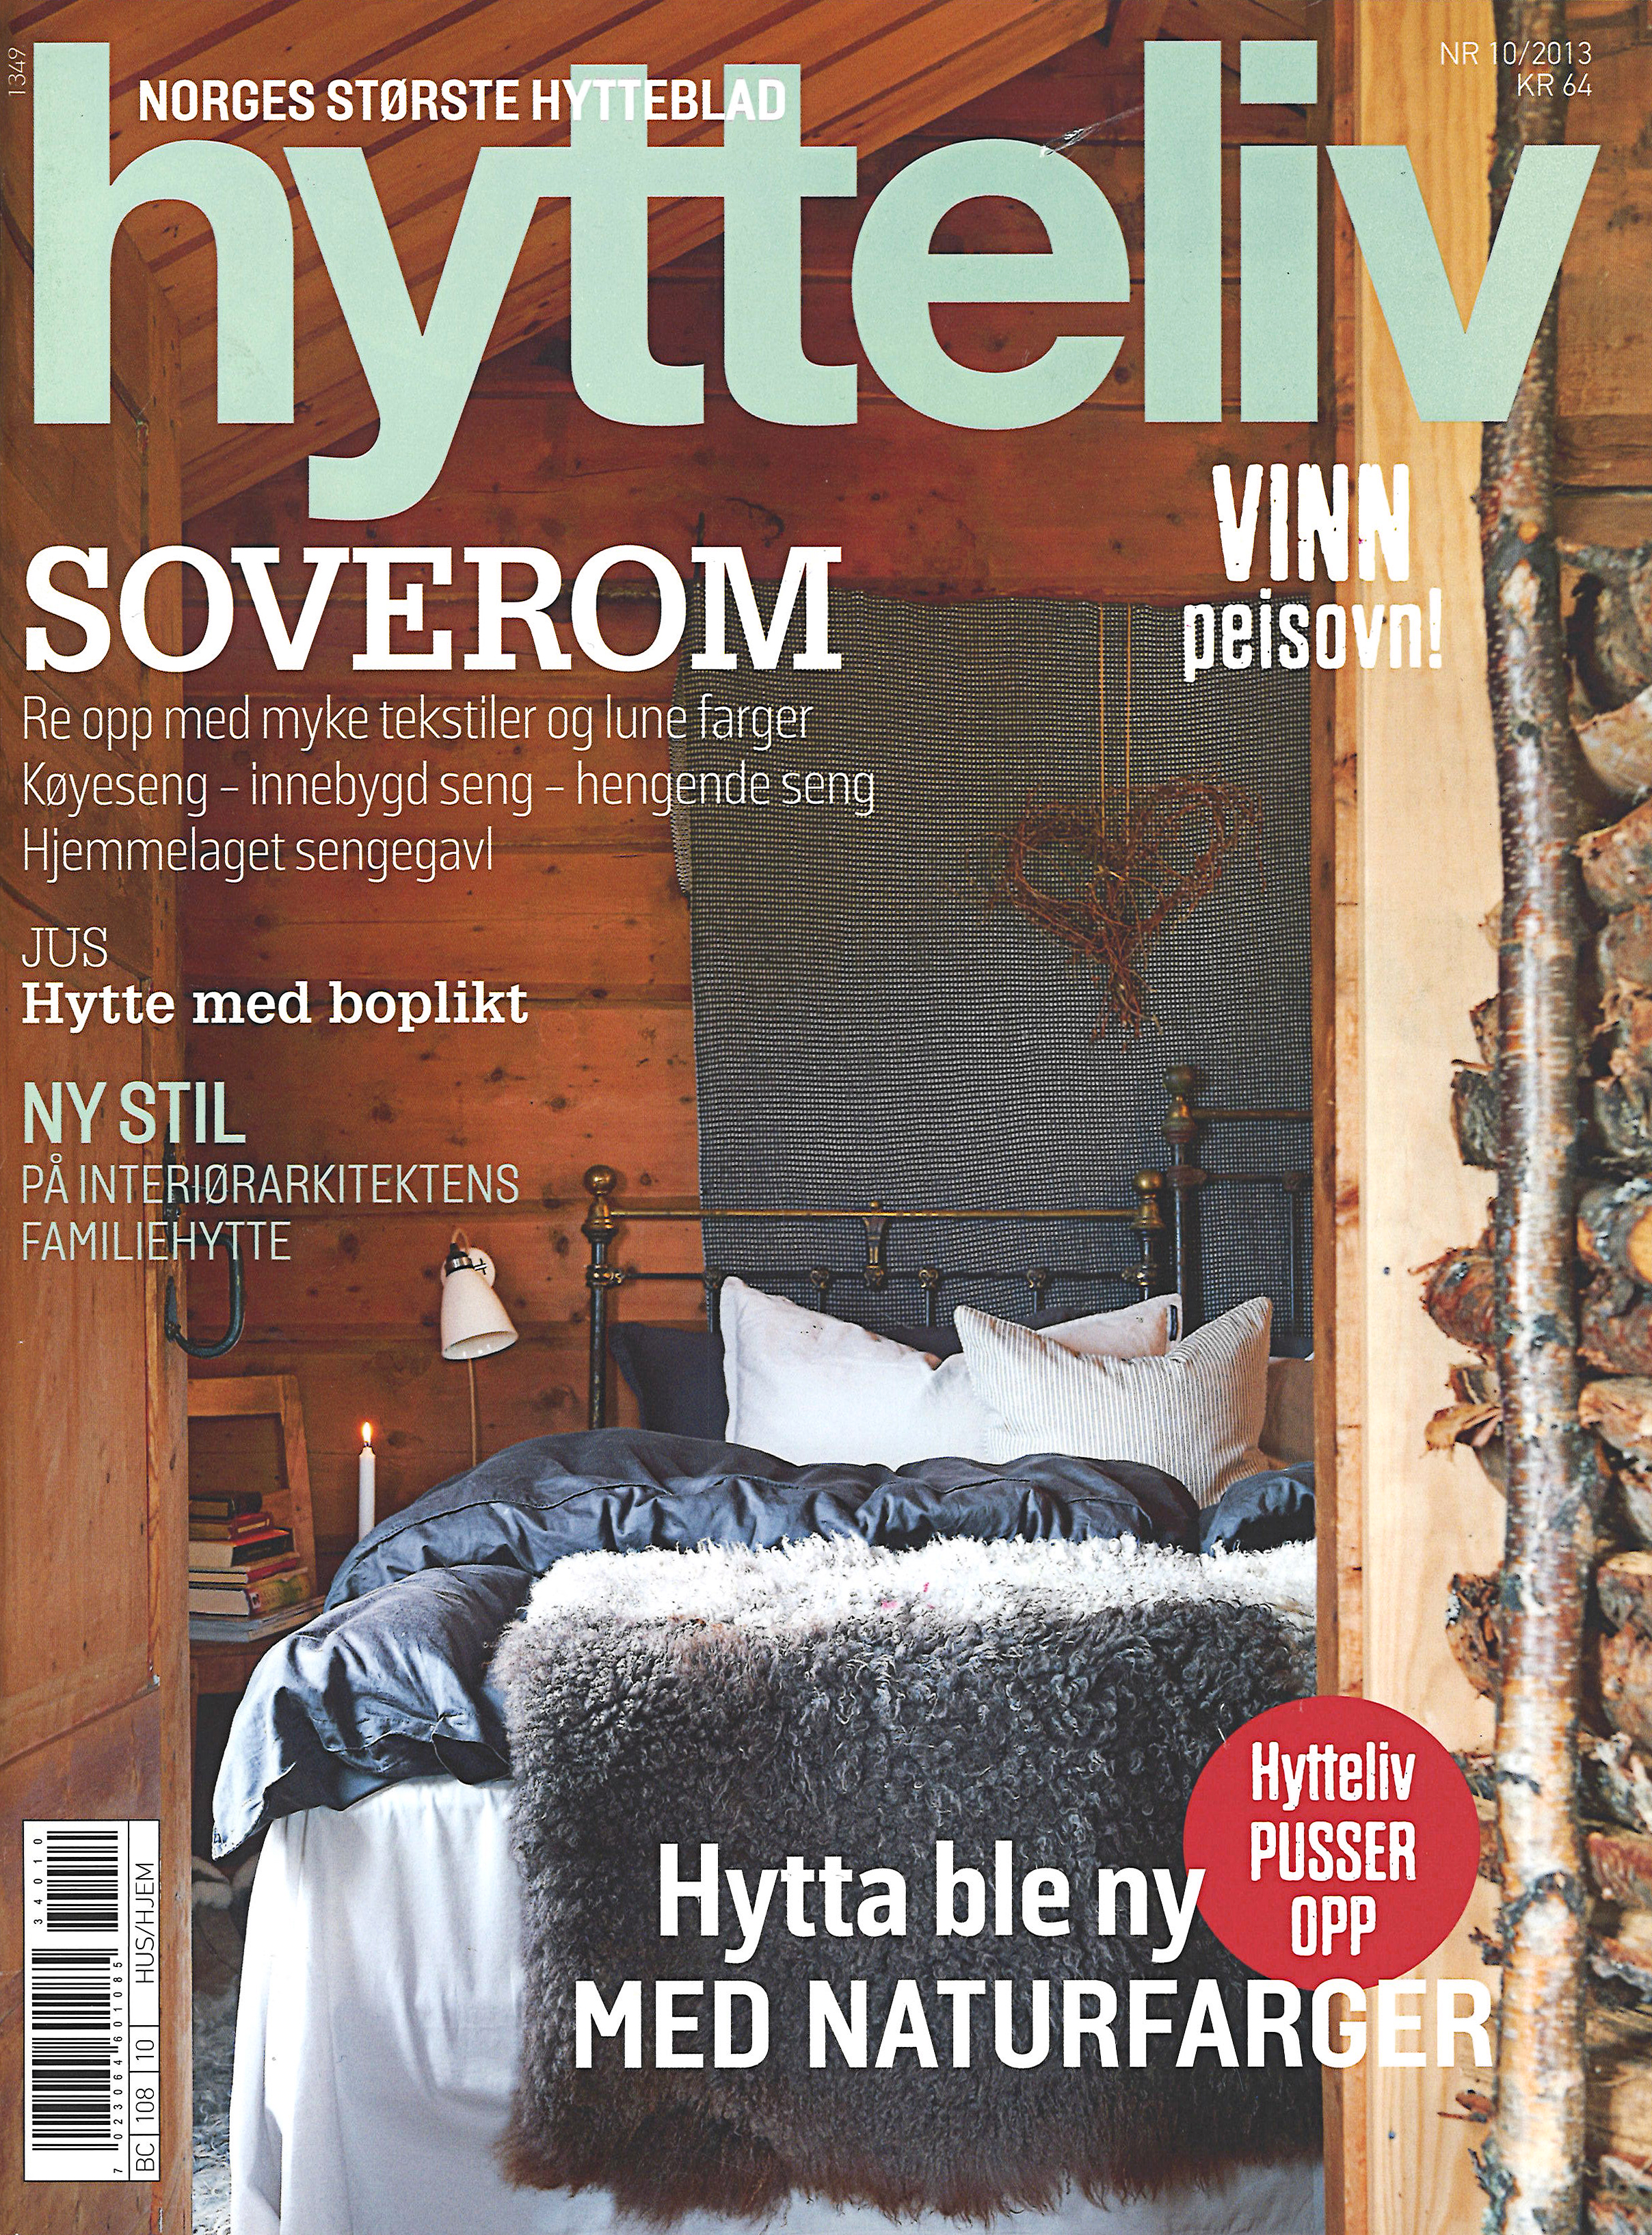 Hytteliv-Nr-10-2013-forside.jpg